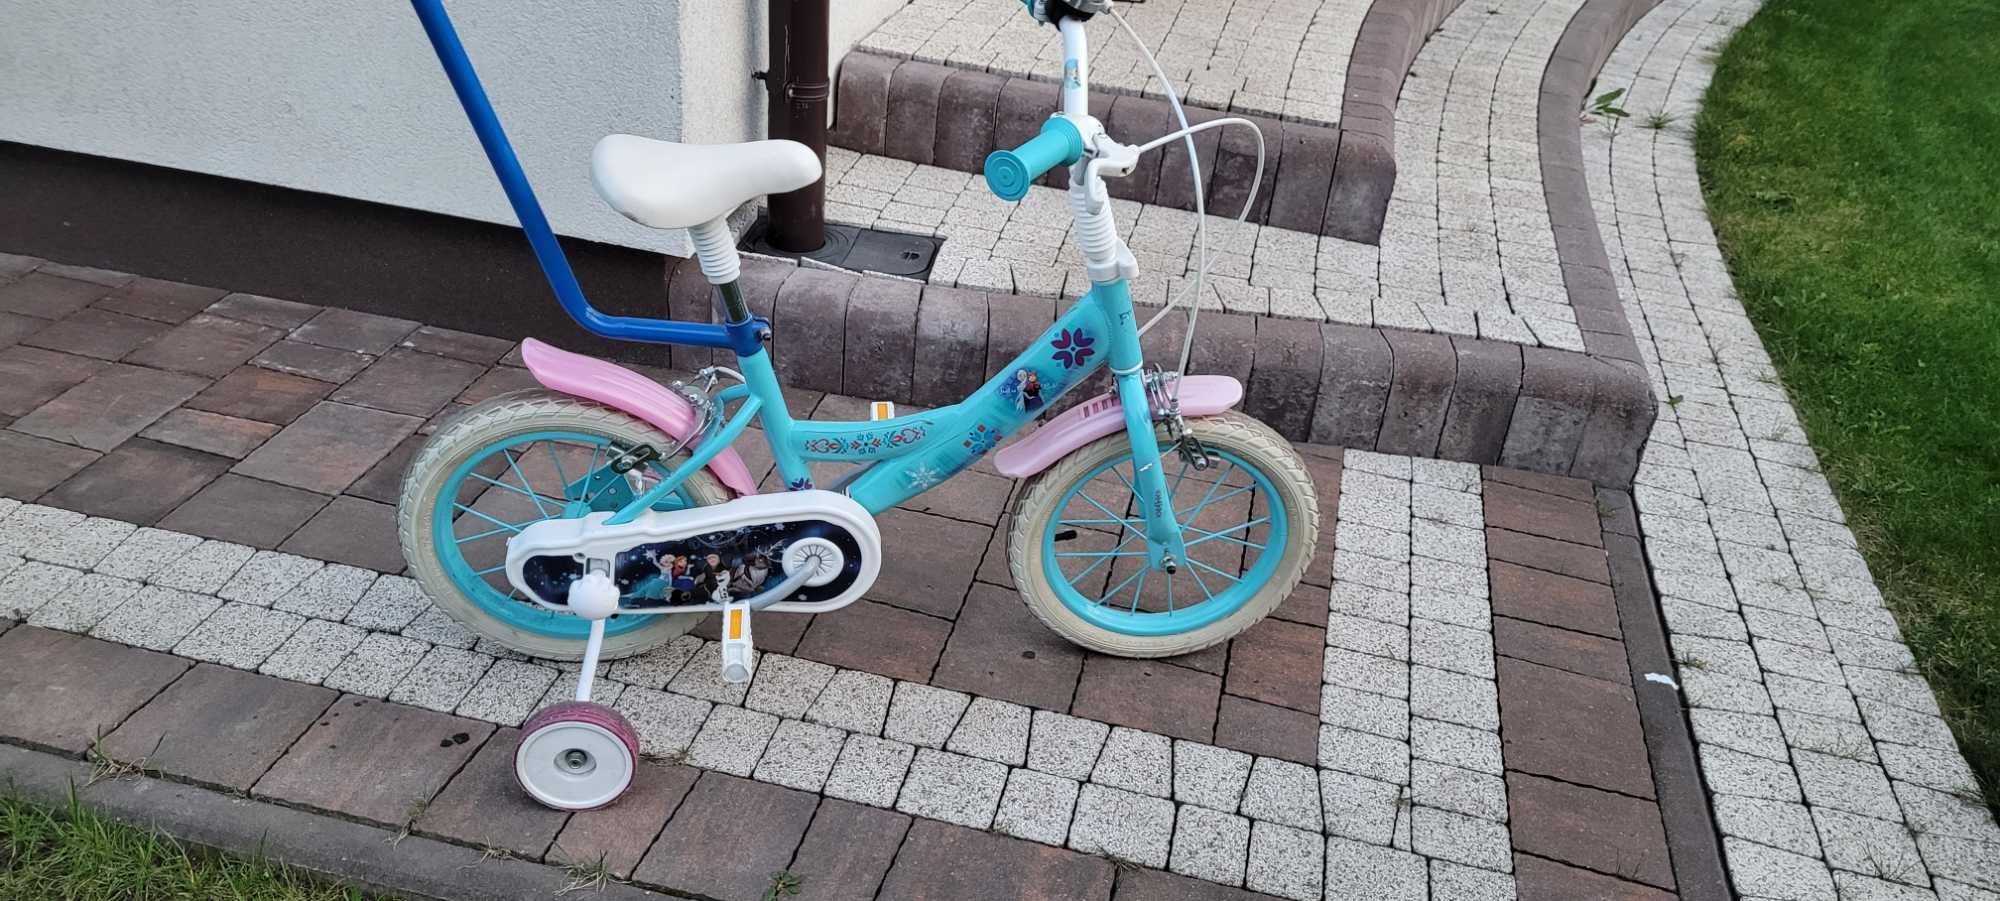 Sprzedam rower dzieciecy